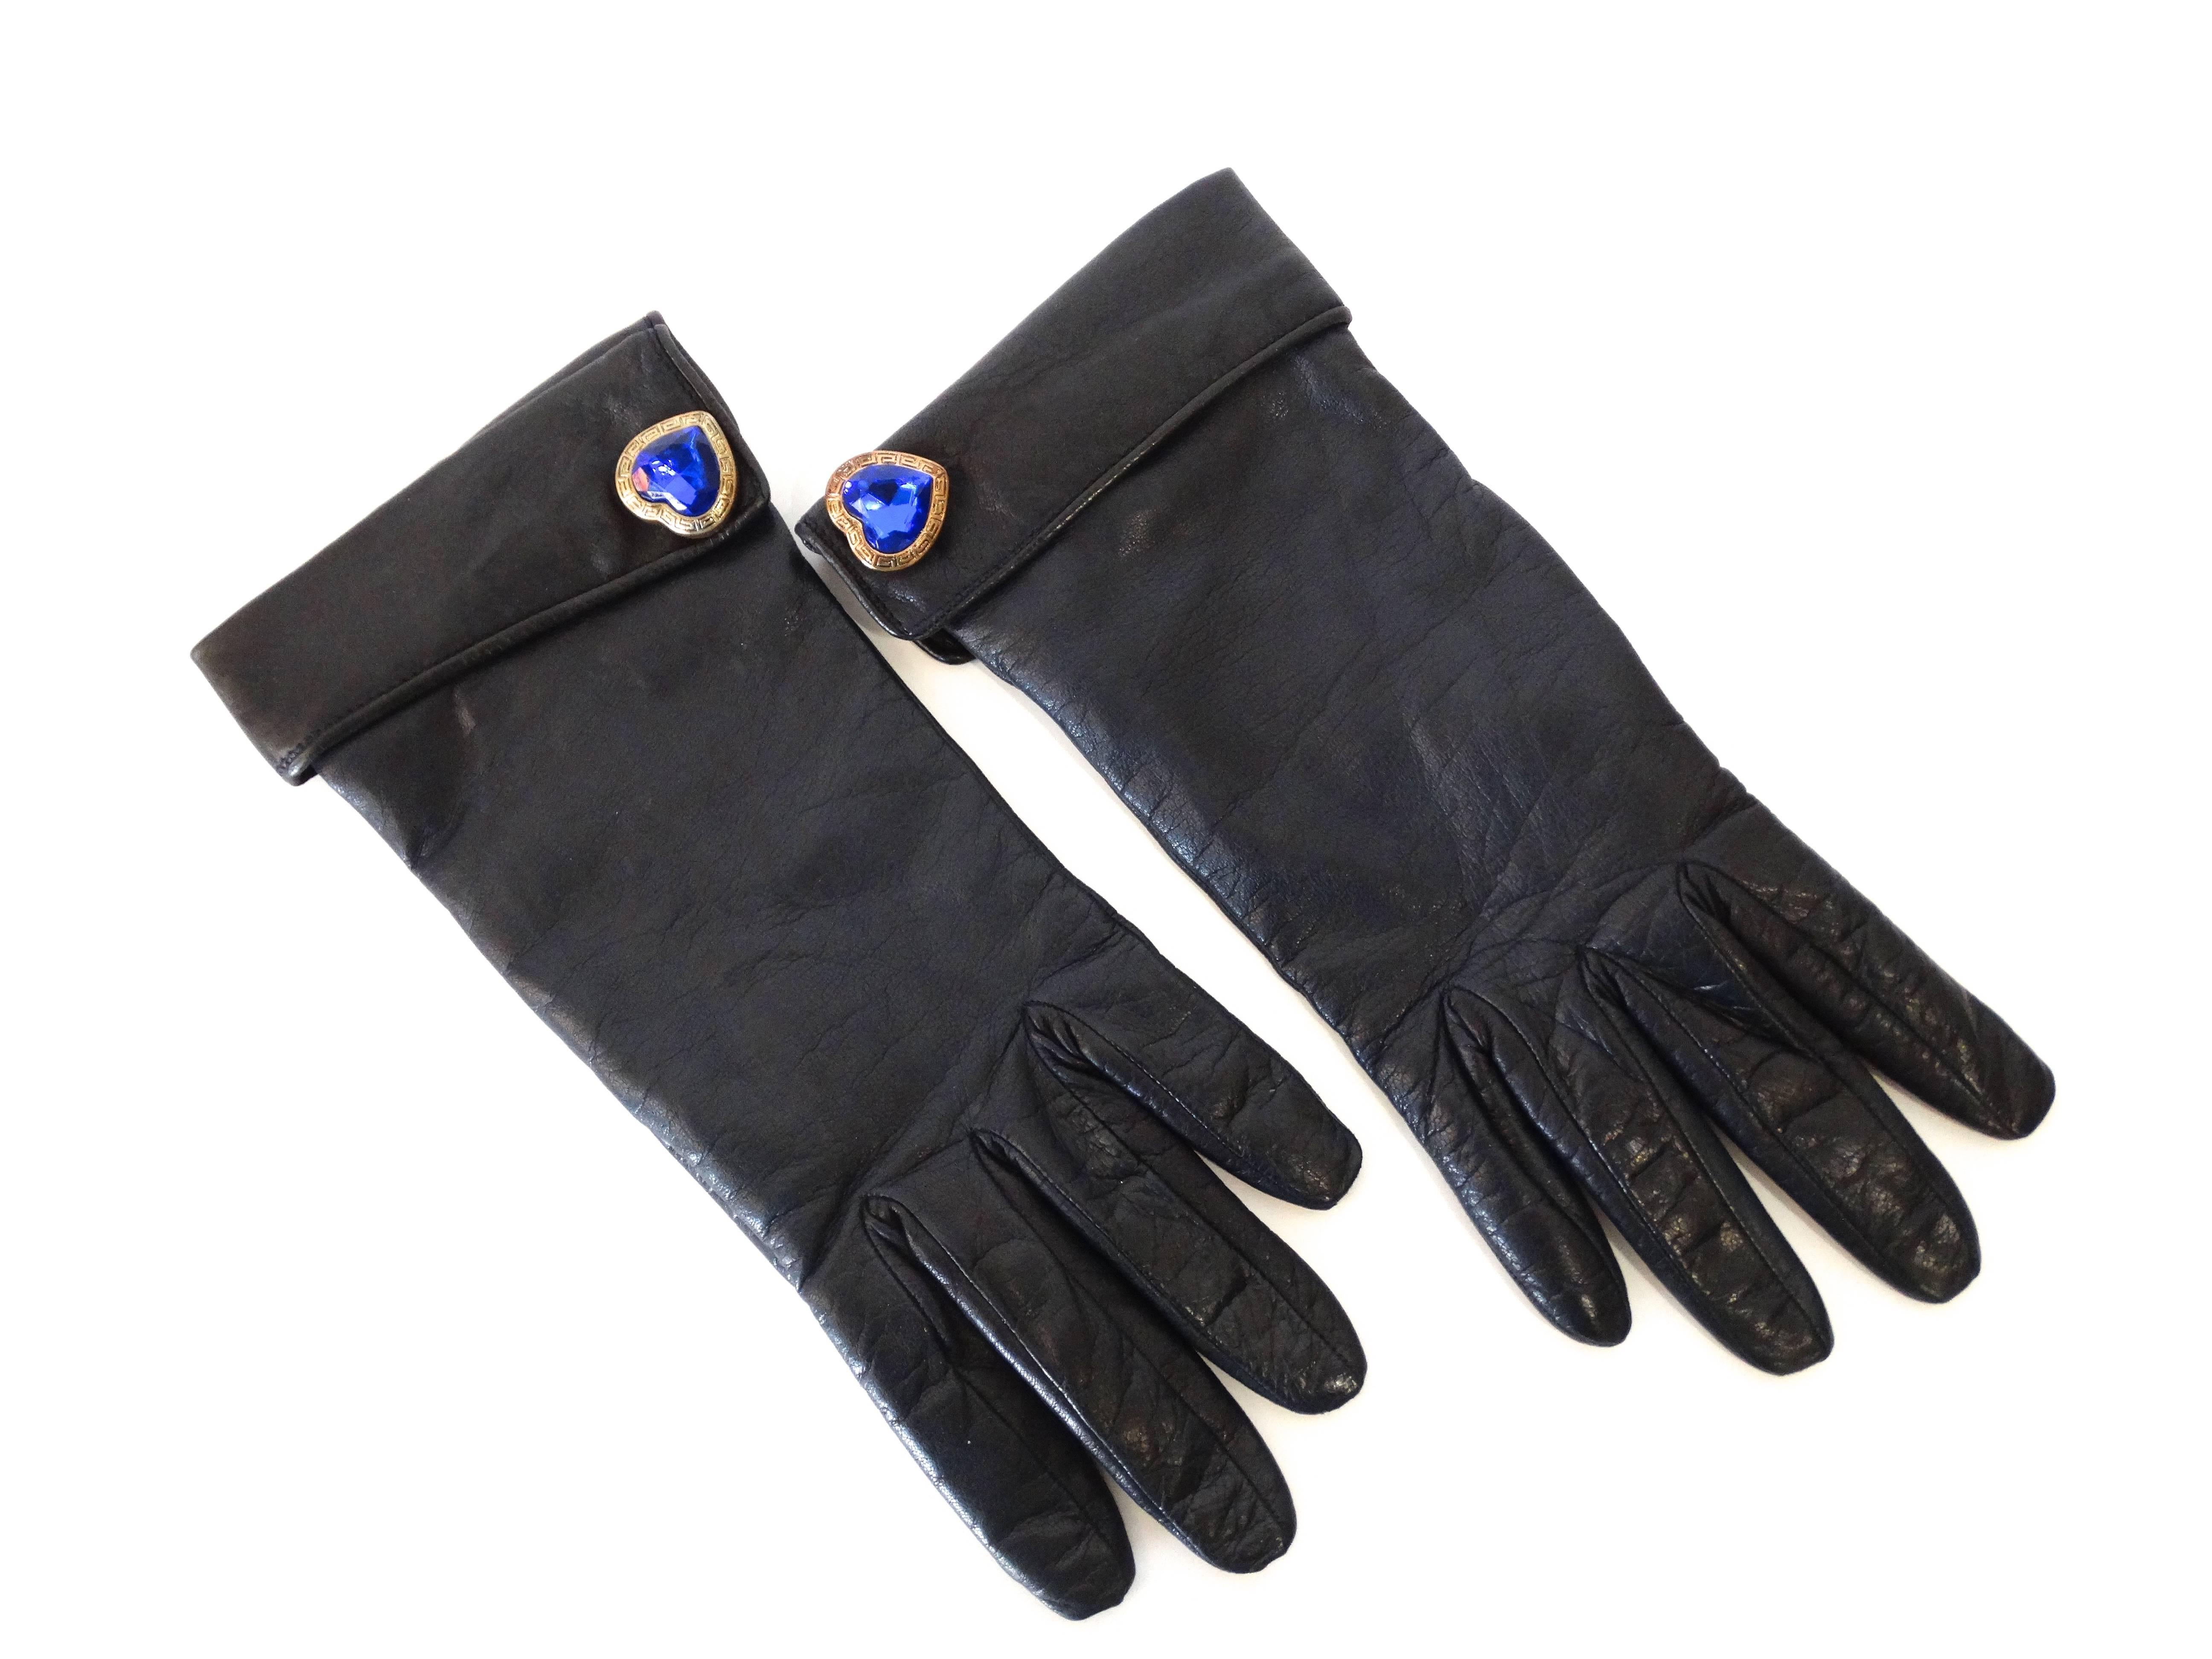 1990er Moschino Handschuhe aus Leder in Marineblau. Vollständig gefüttert mit hellbraunem Wollstrick. Blaue Juwelenherzknöpfe an den Manschetten. Markiert eine Größe 7 Etikett im Inneren des Handschuhs Made in Italy 